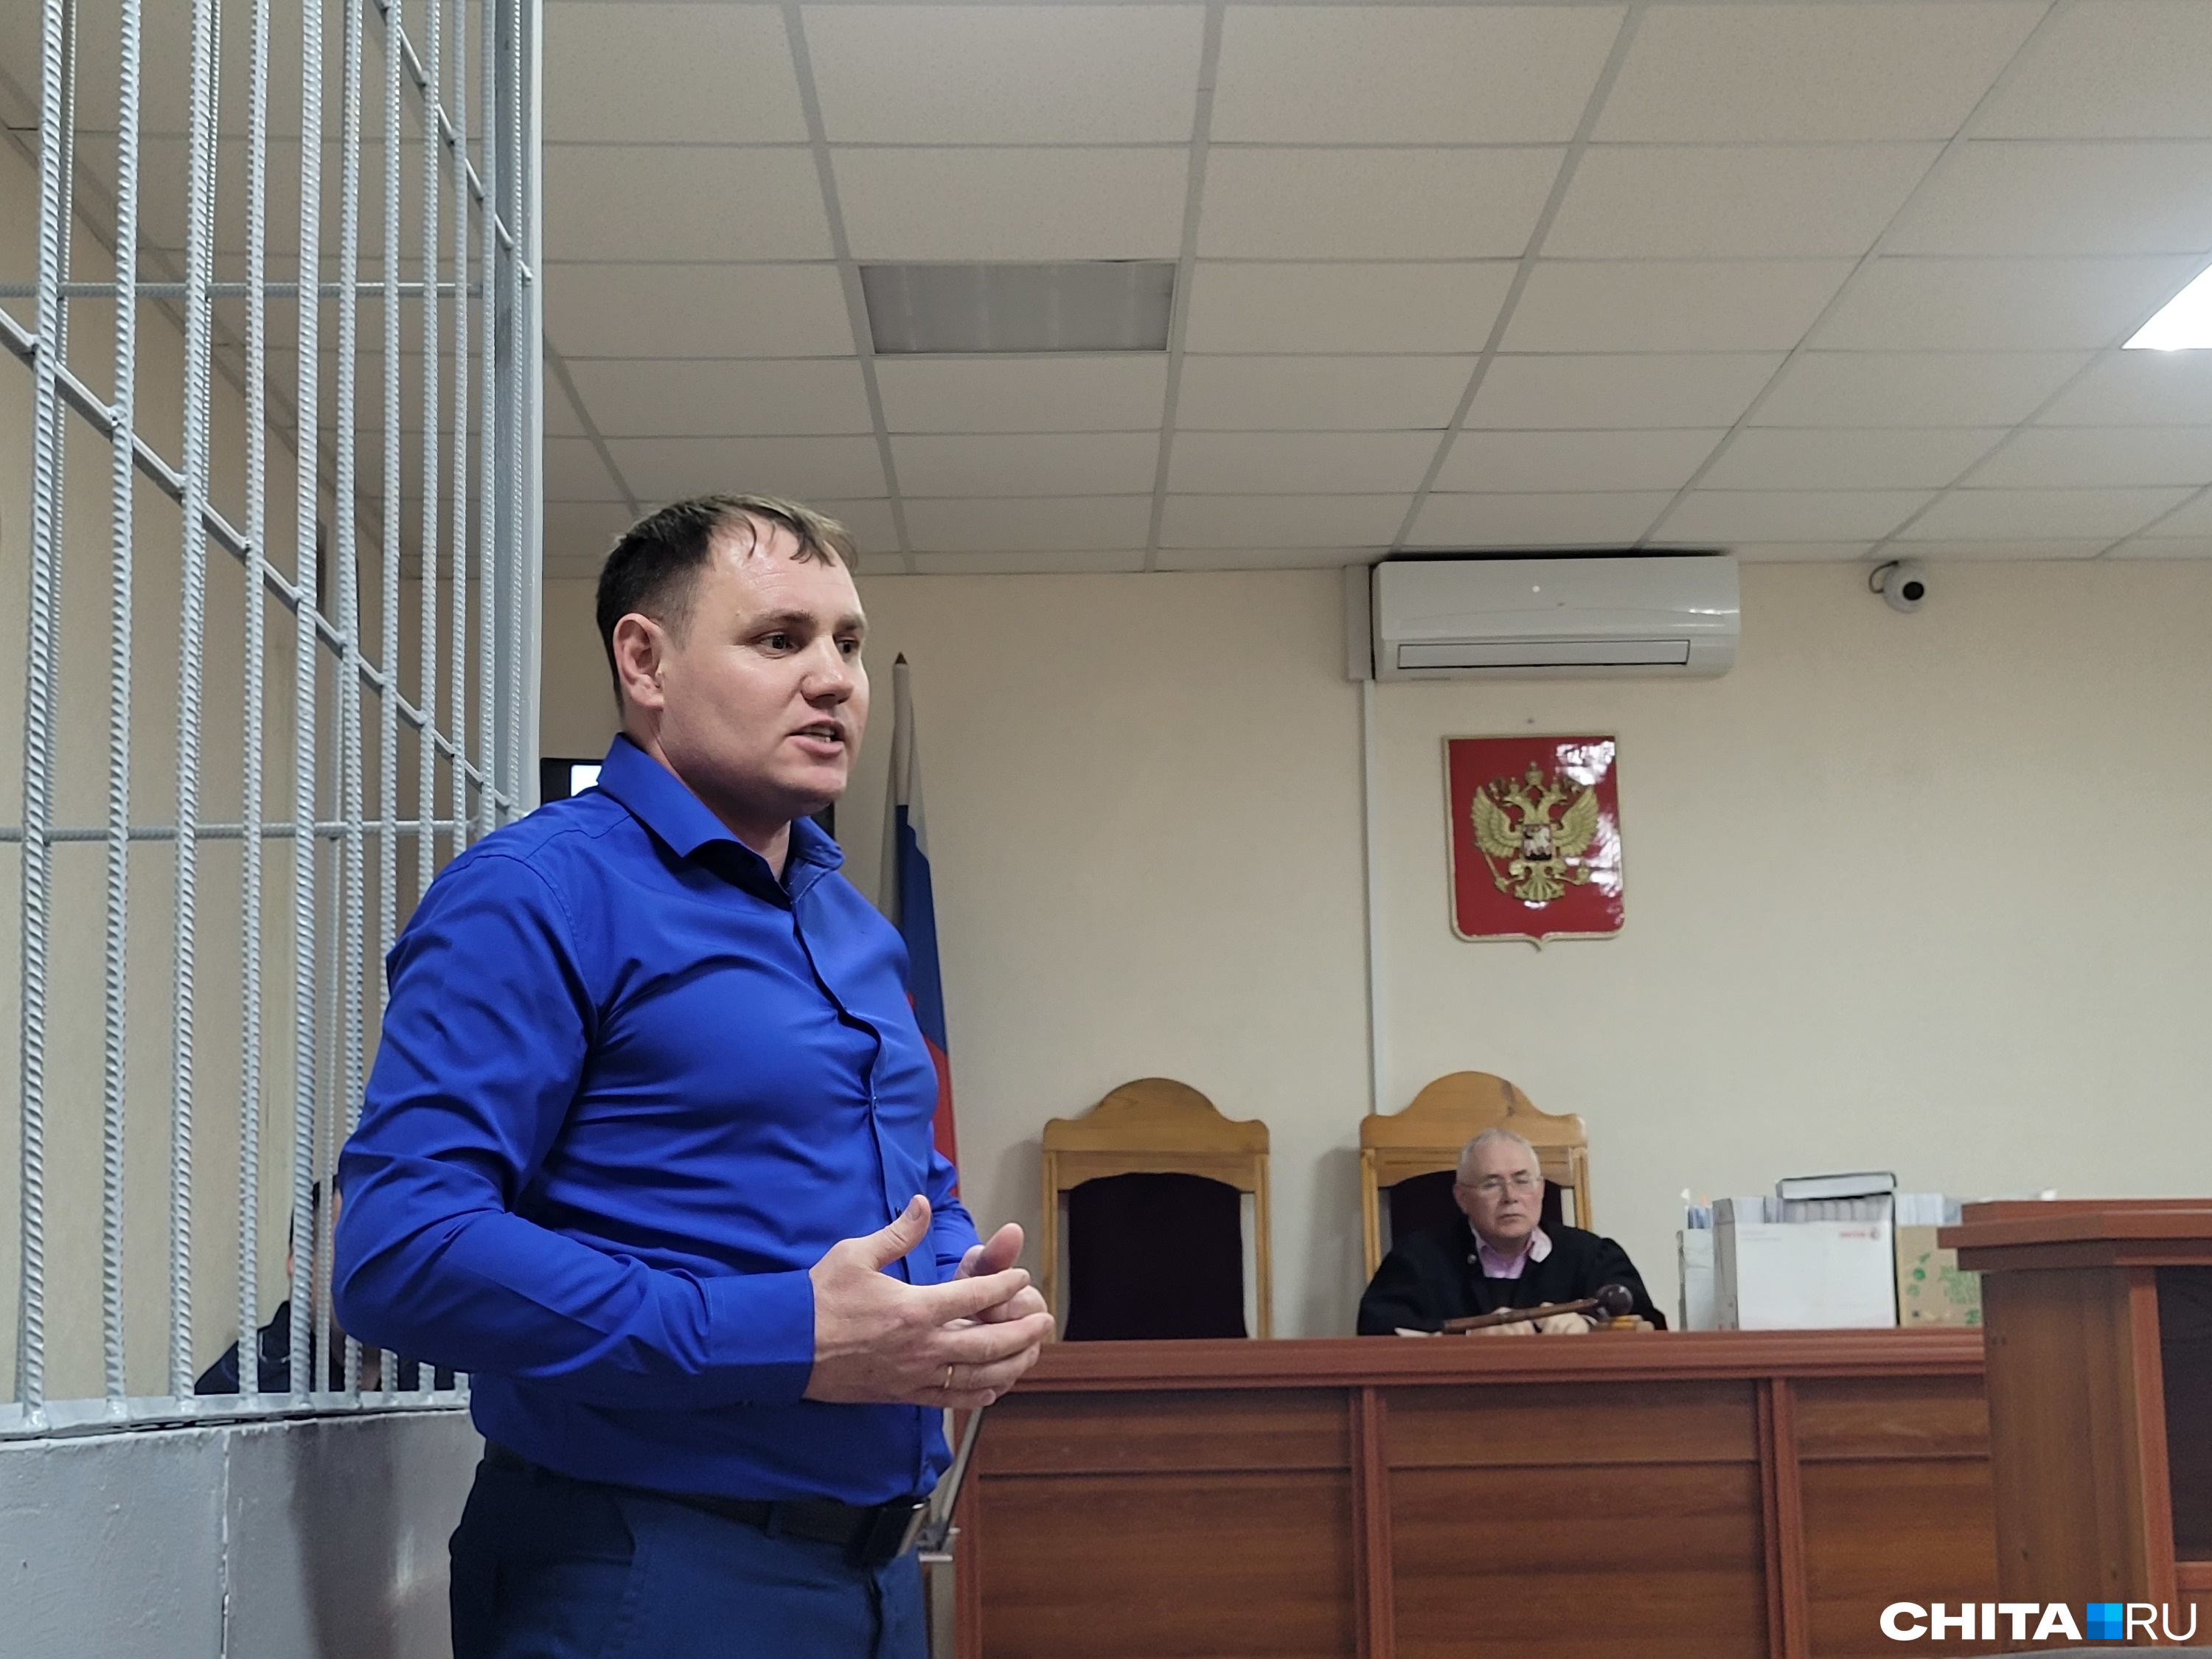 Михаил Слесаренко с показаниями Золотухина не согласен, но и экс-министр считает вопросы экс-мэра способом защиты